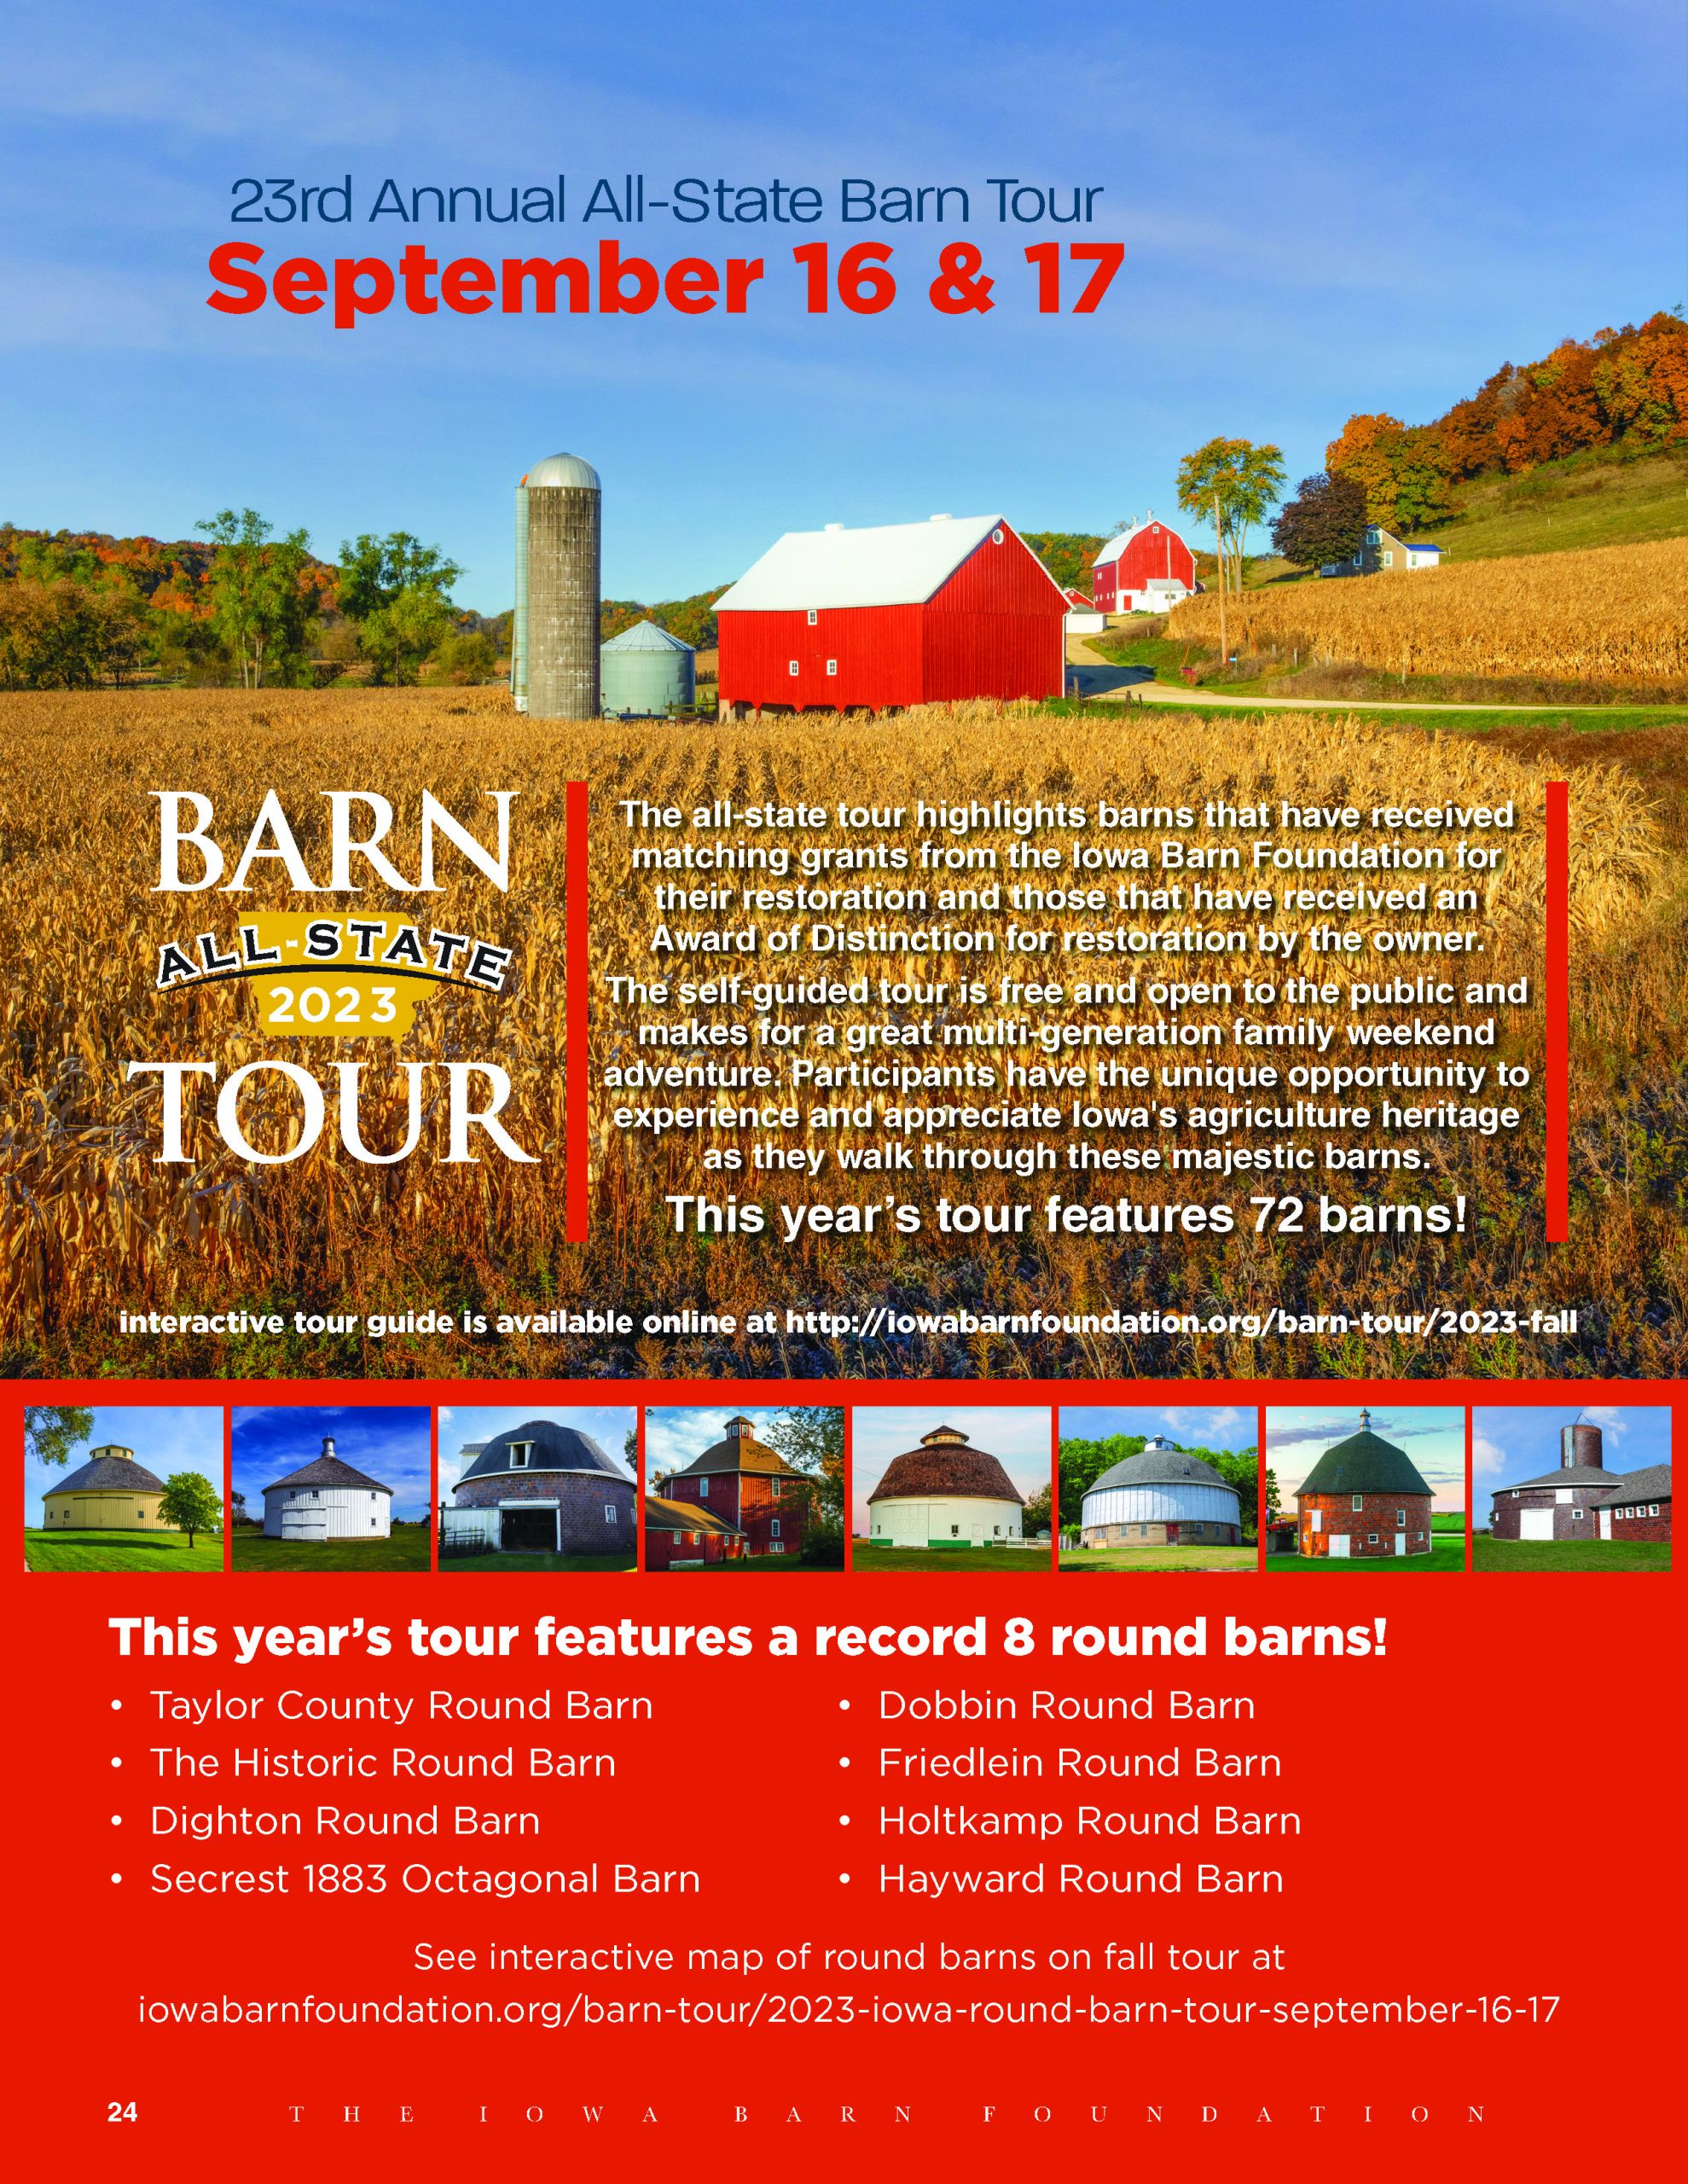 Barn Tours Iowa Barn Foundation